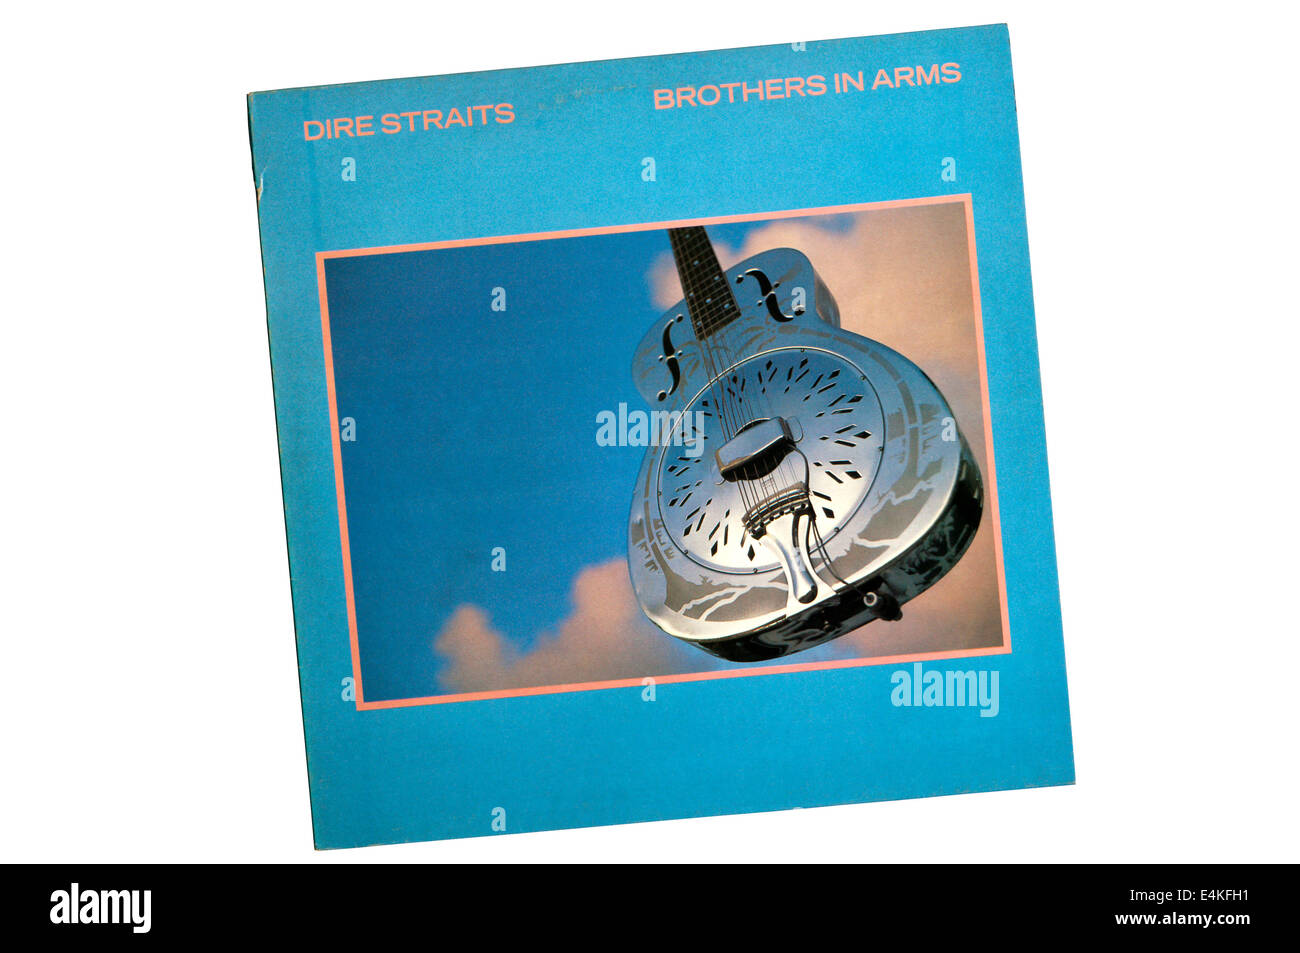 Brüder in den Armen war das 5. Studioalbum der britischen Rockband Dire Straits, 1985 veröffentlicht. Stockfoto